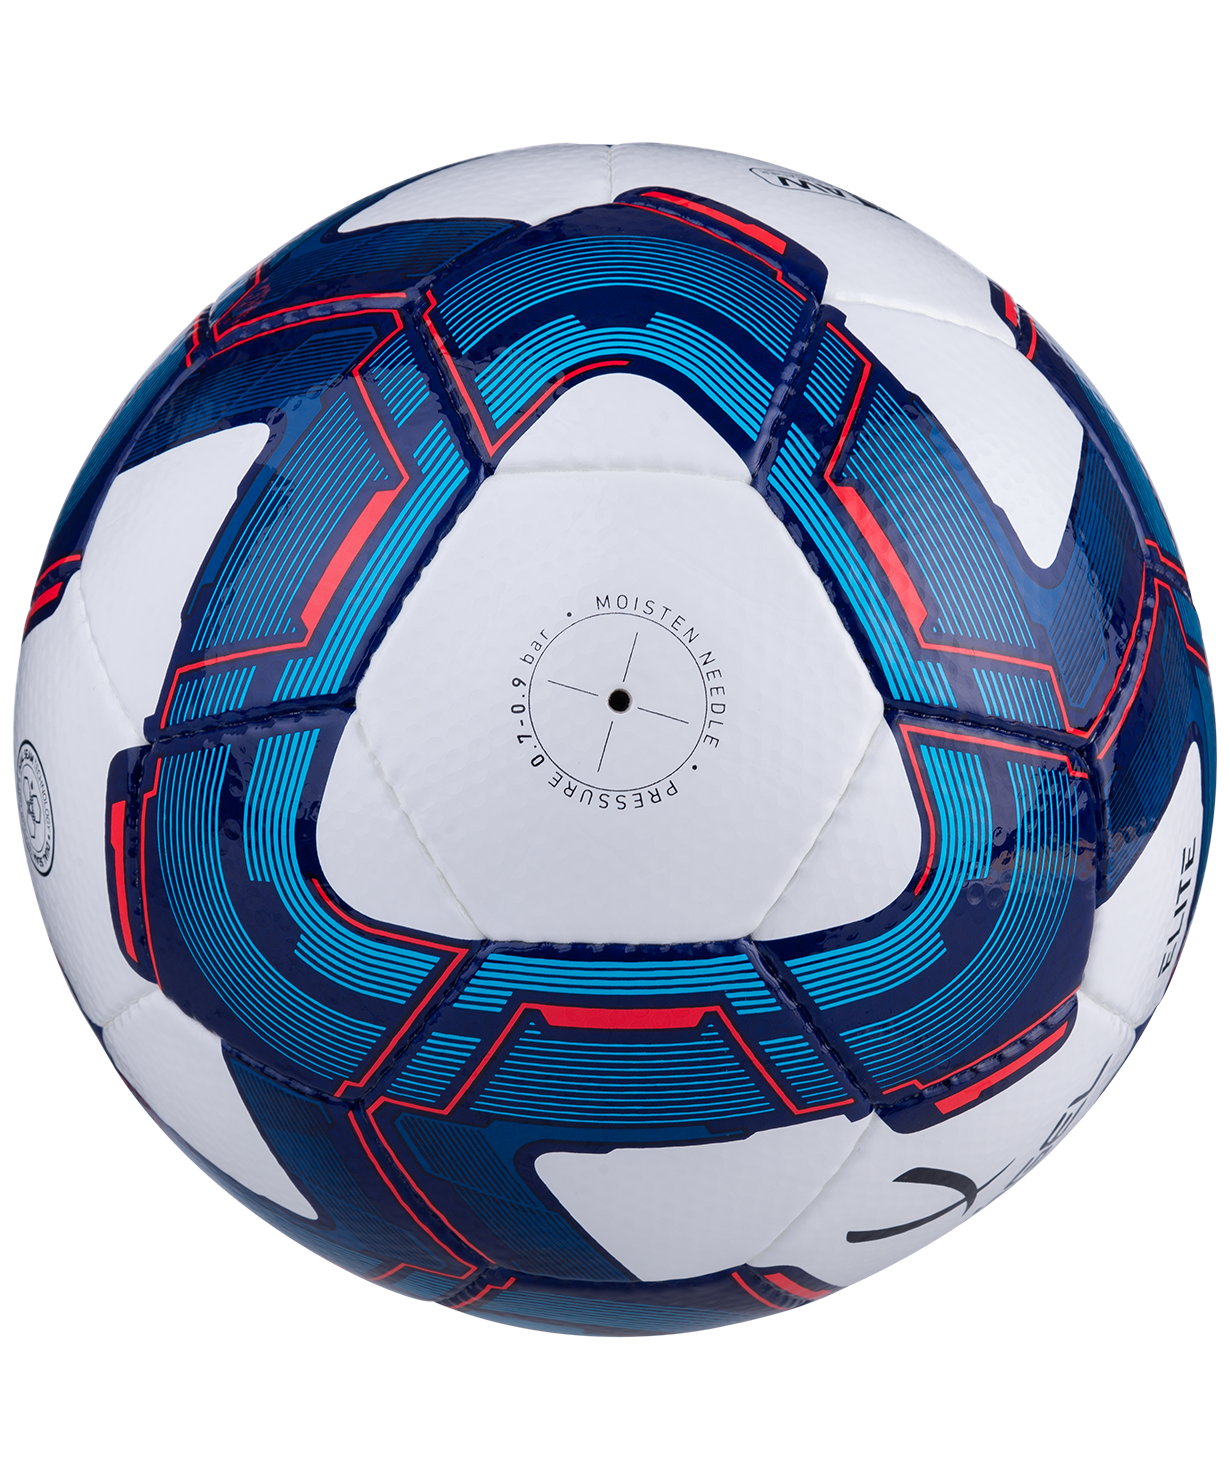 фото Jögel Elite мяч футбольный  размер 4 Football-54 